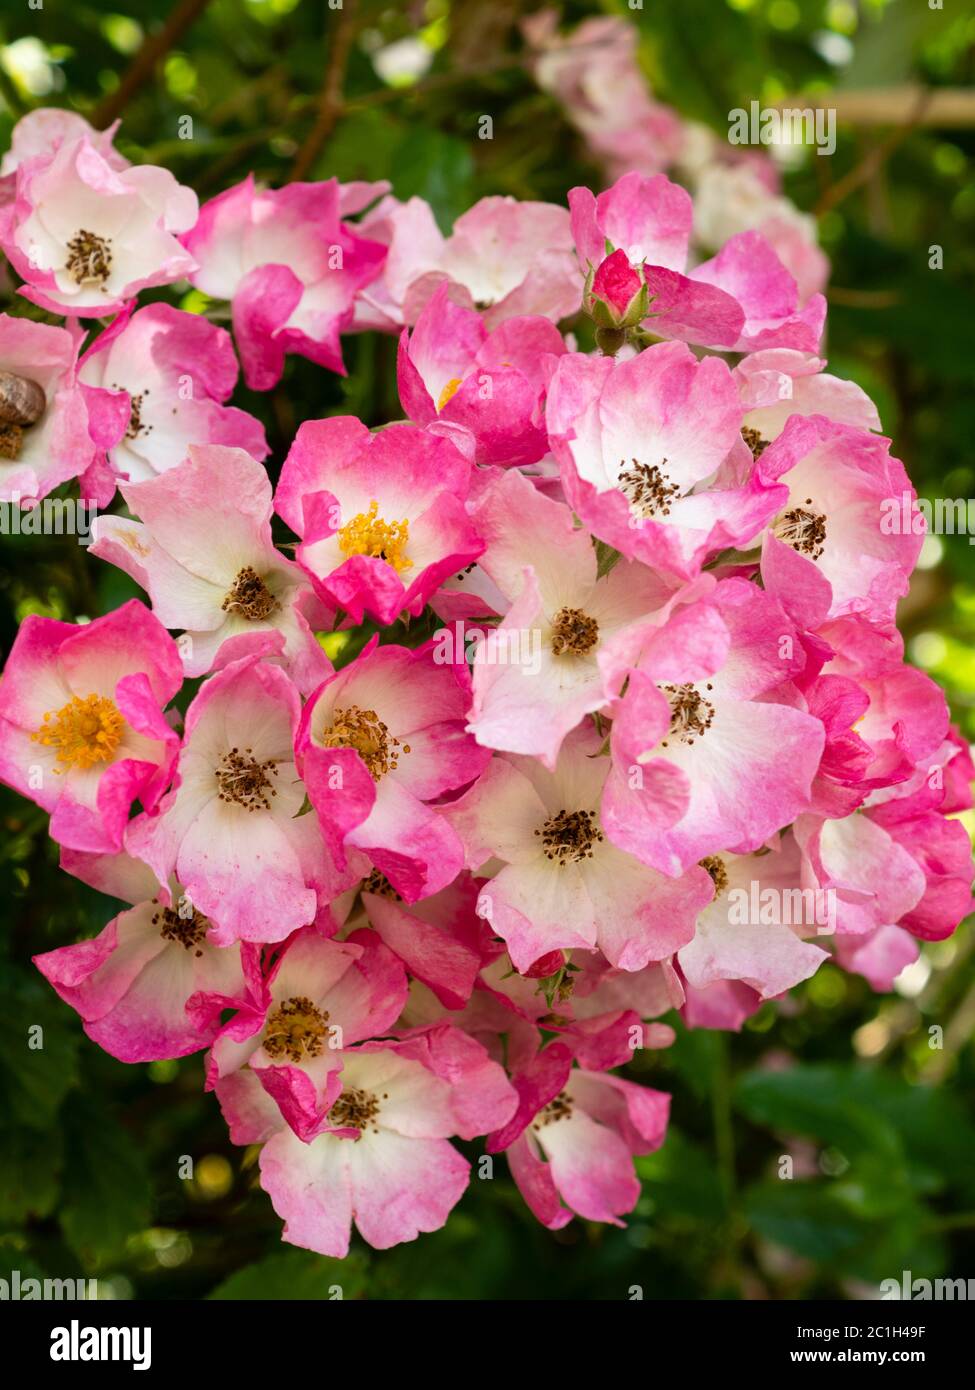 Densely clustered white eyed pink flowers of the hybrid musk shrub rose, Rosa 'Ballerina' Stock Photo